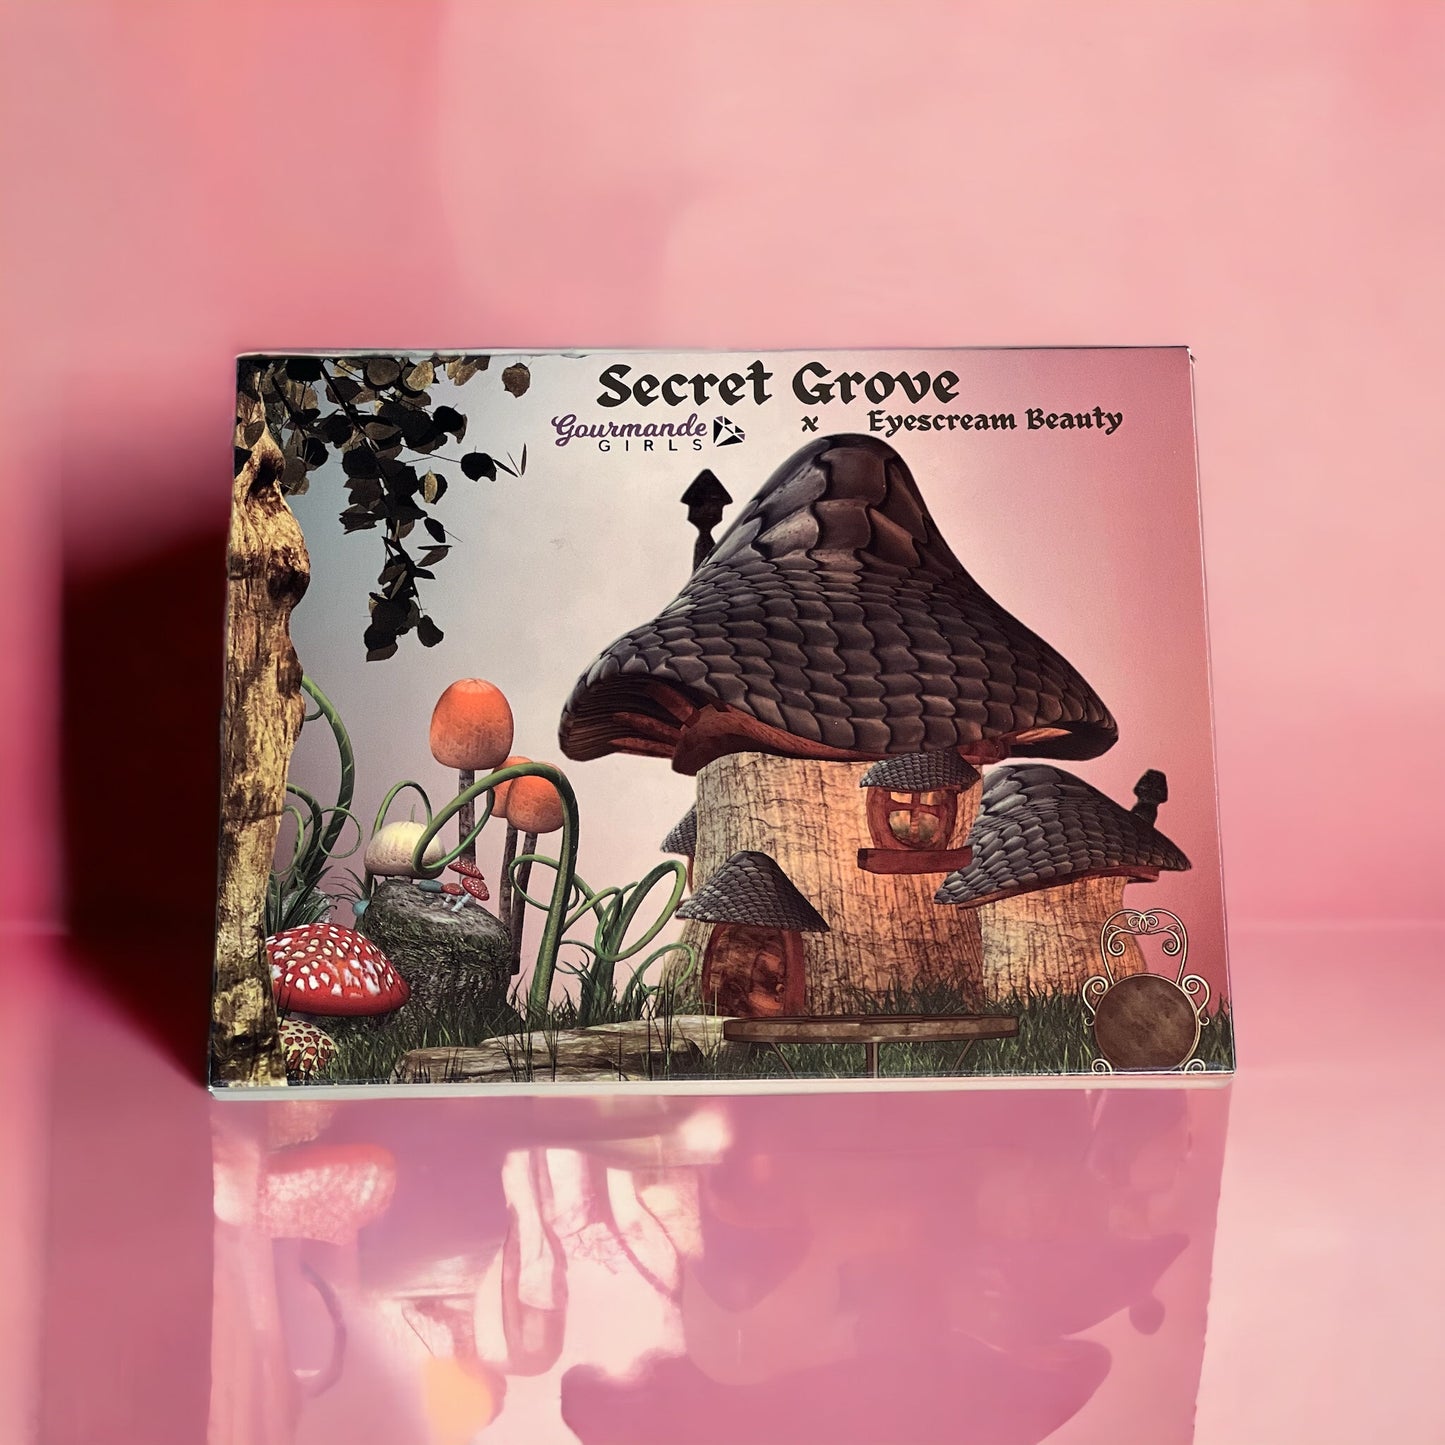 "Secret Grove" Gourmande Girls x Eyescream Beauty